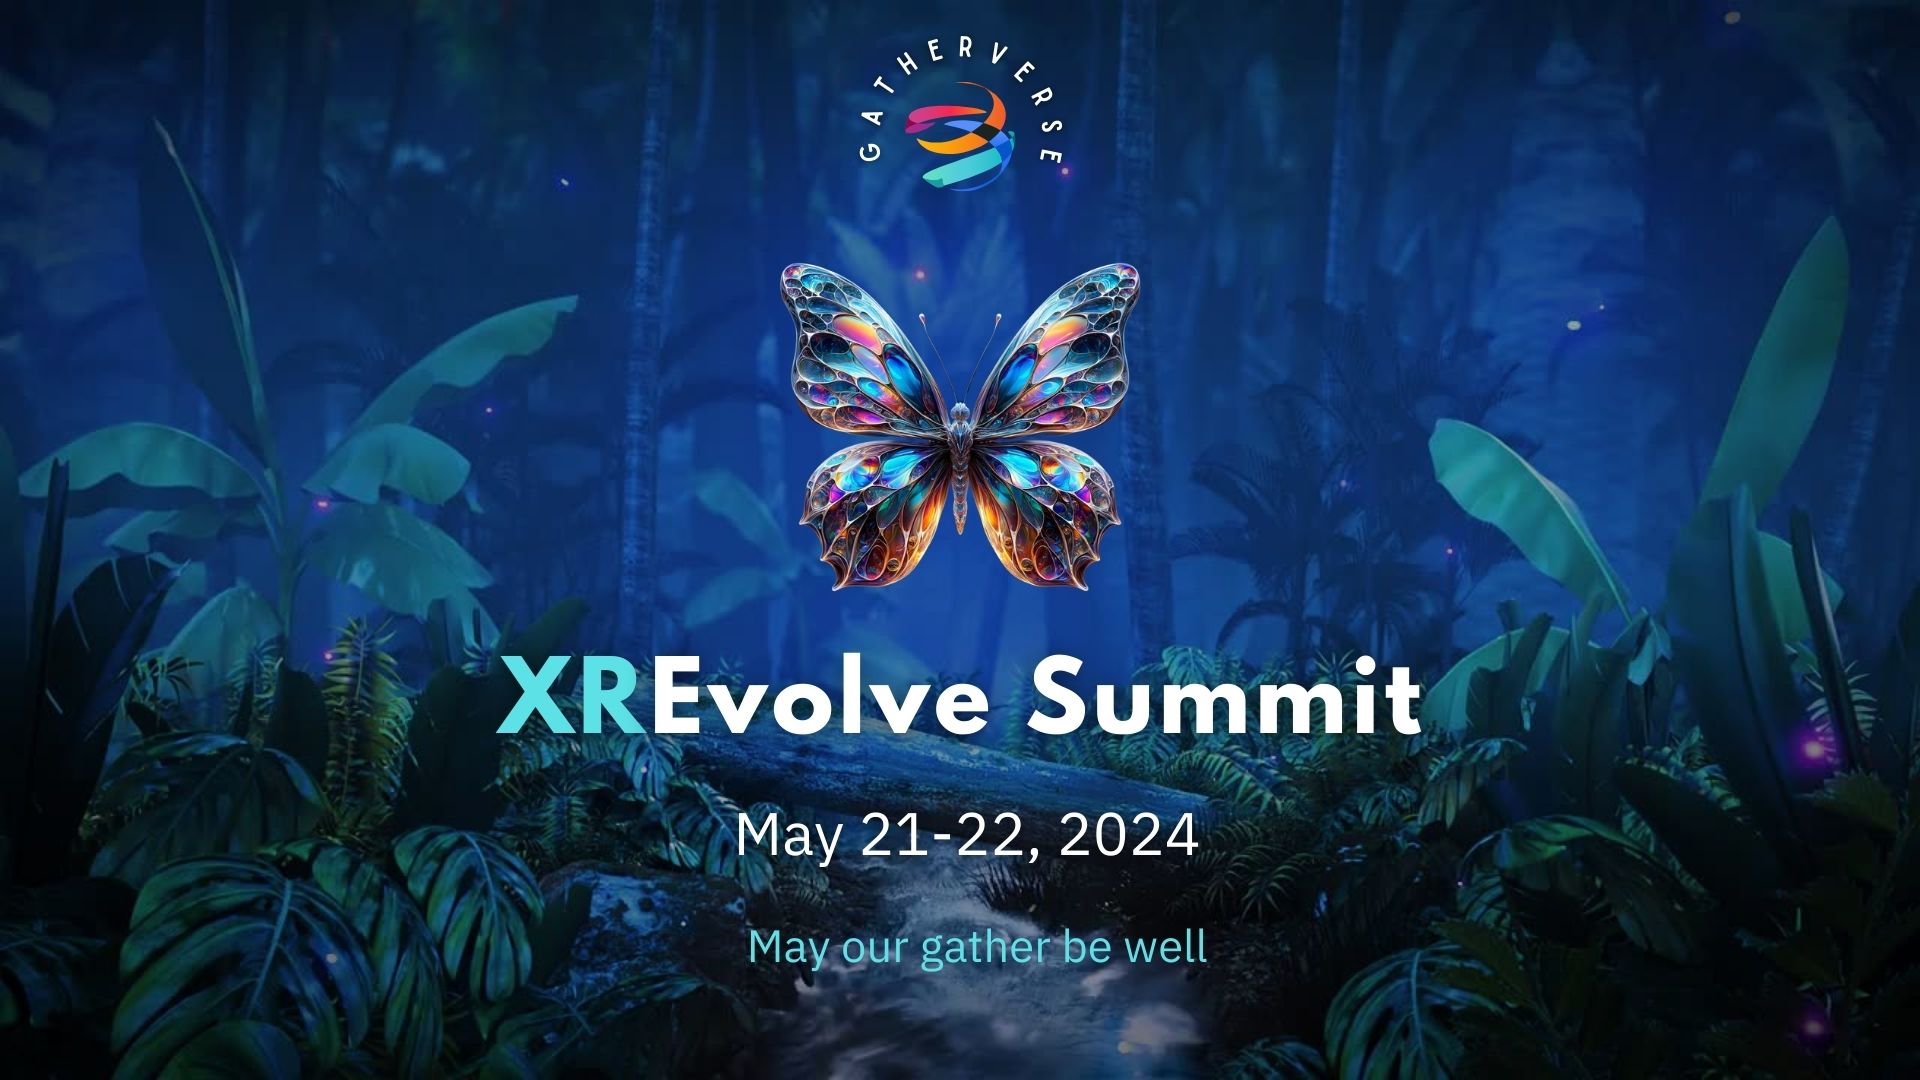 GatherVerse XREvolve Summit